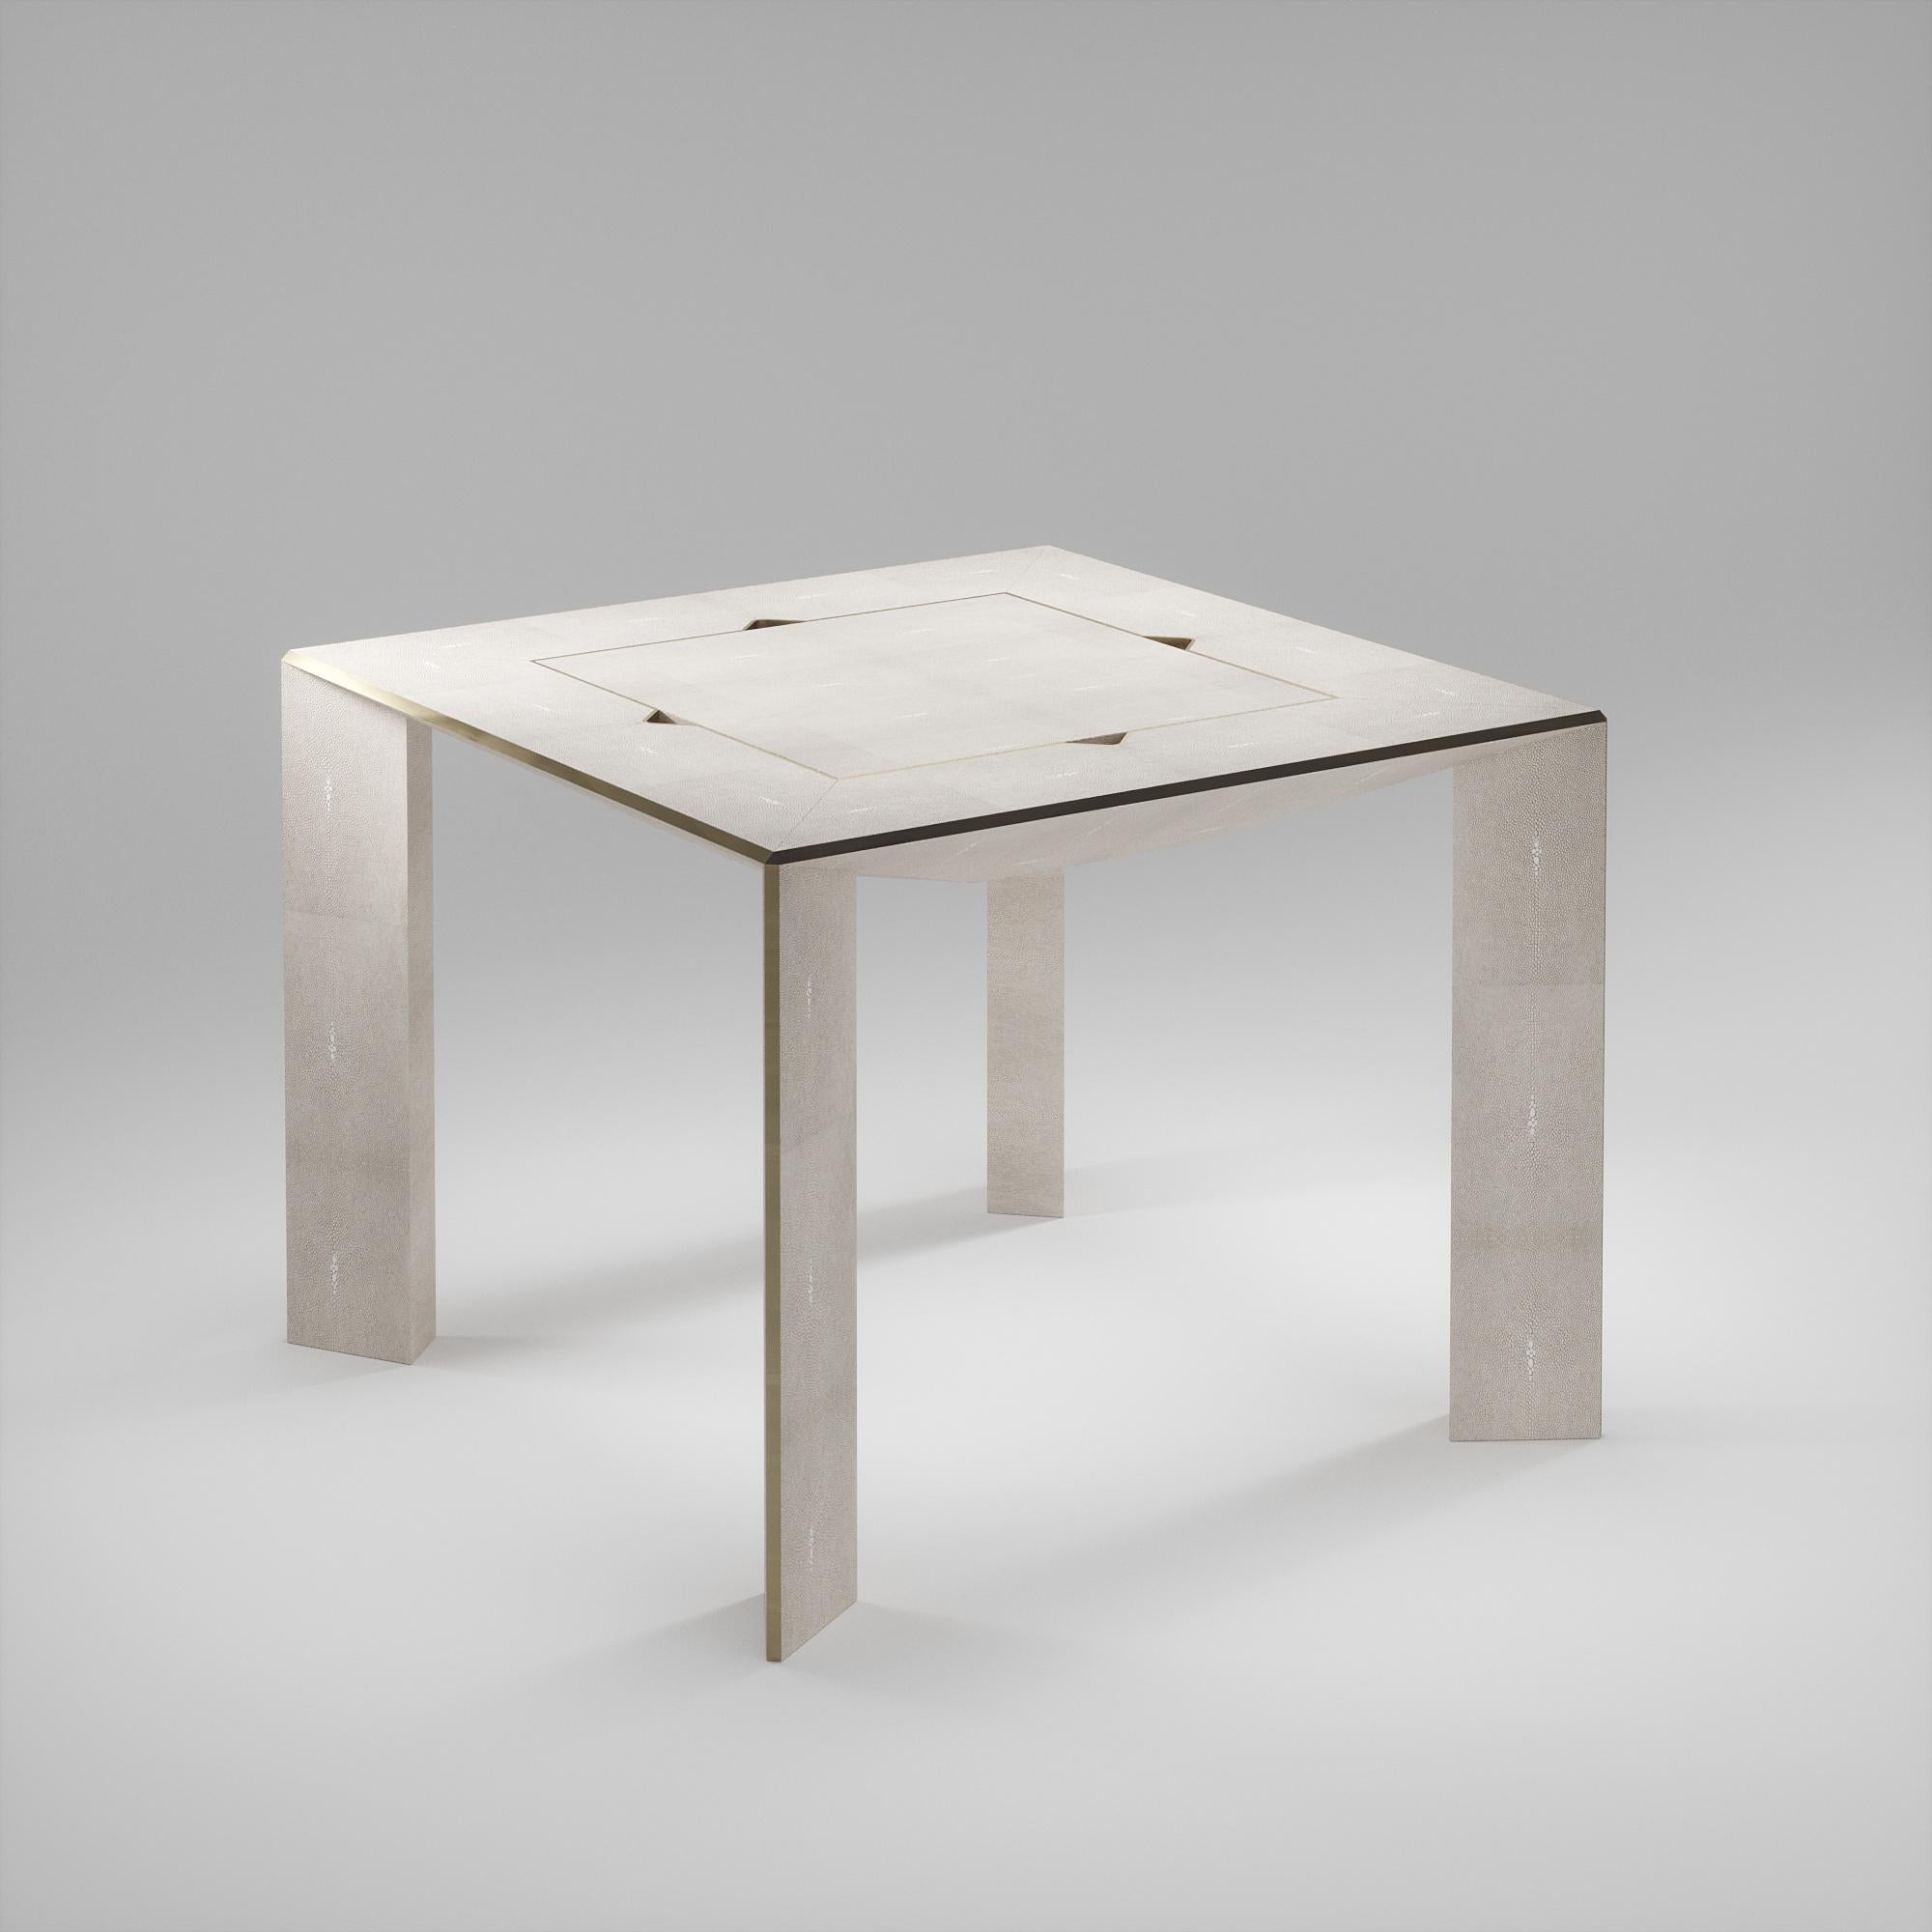 La table de jeu Parsons 4 en 1 R&Y Augousti est une pièce de luxe pour votre maison. Les lignes épurées de l'ensemble du meuble en galuchat crème, accentuées par les détails élégants en laiton bronze-patina sur les pieds, en font un meuble